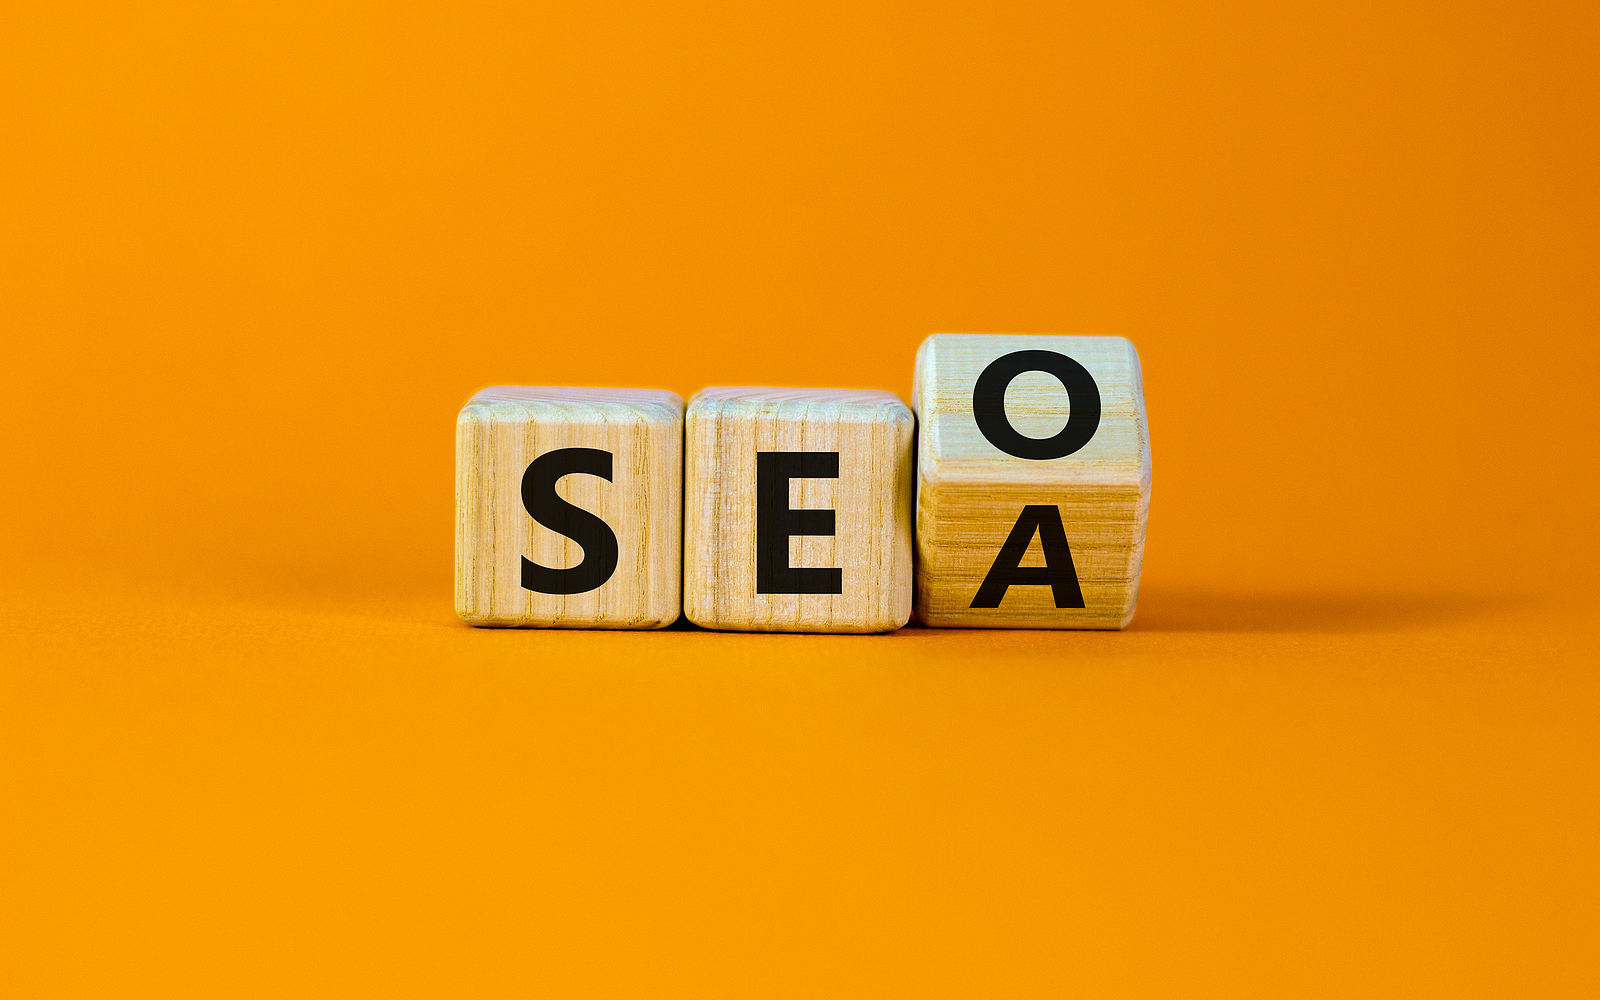 SEO en SEA: waarom zijn ze belangrijk voor je website